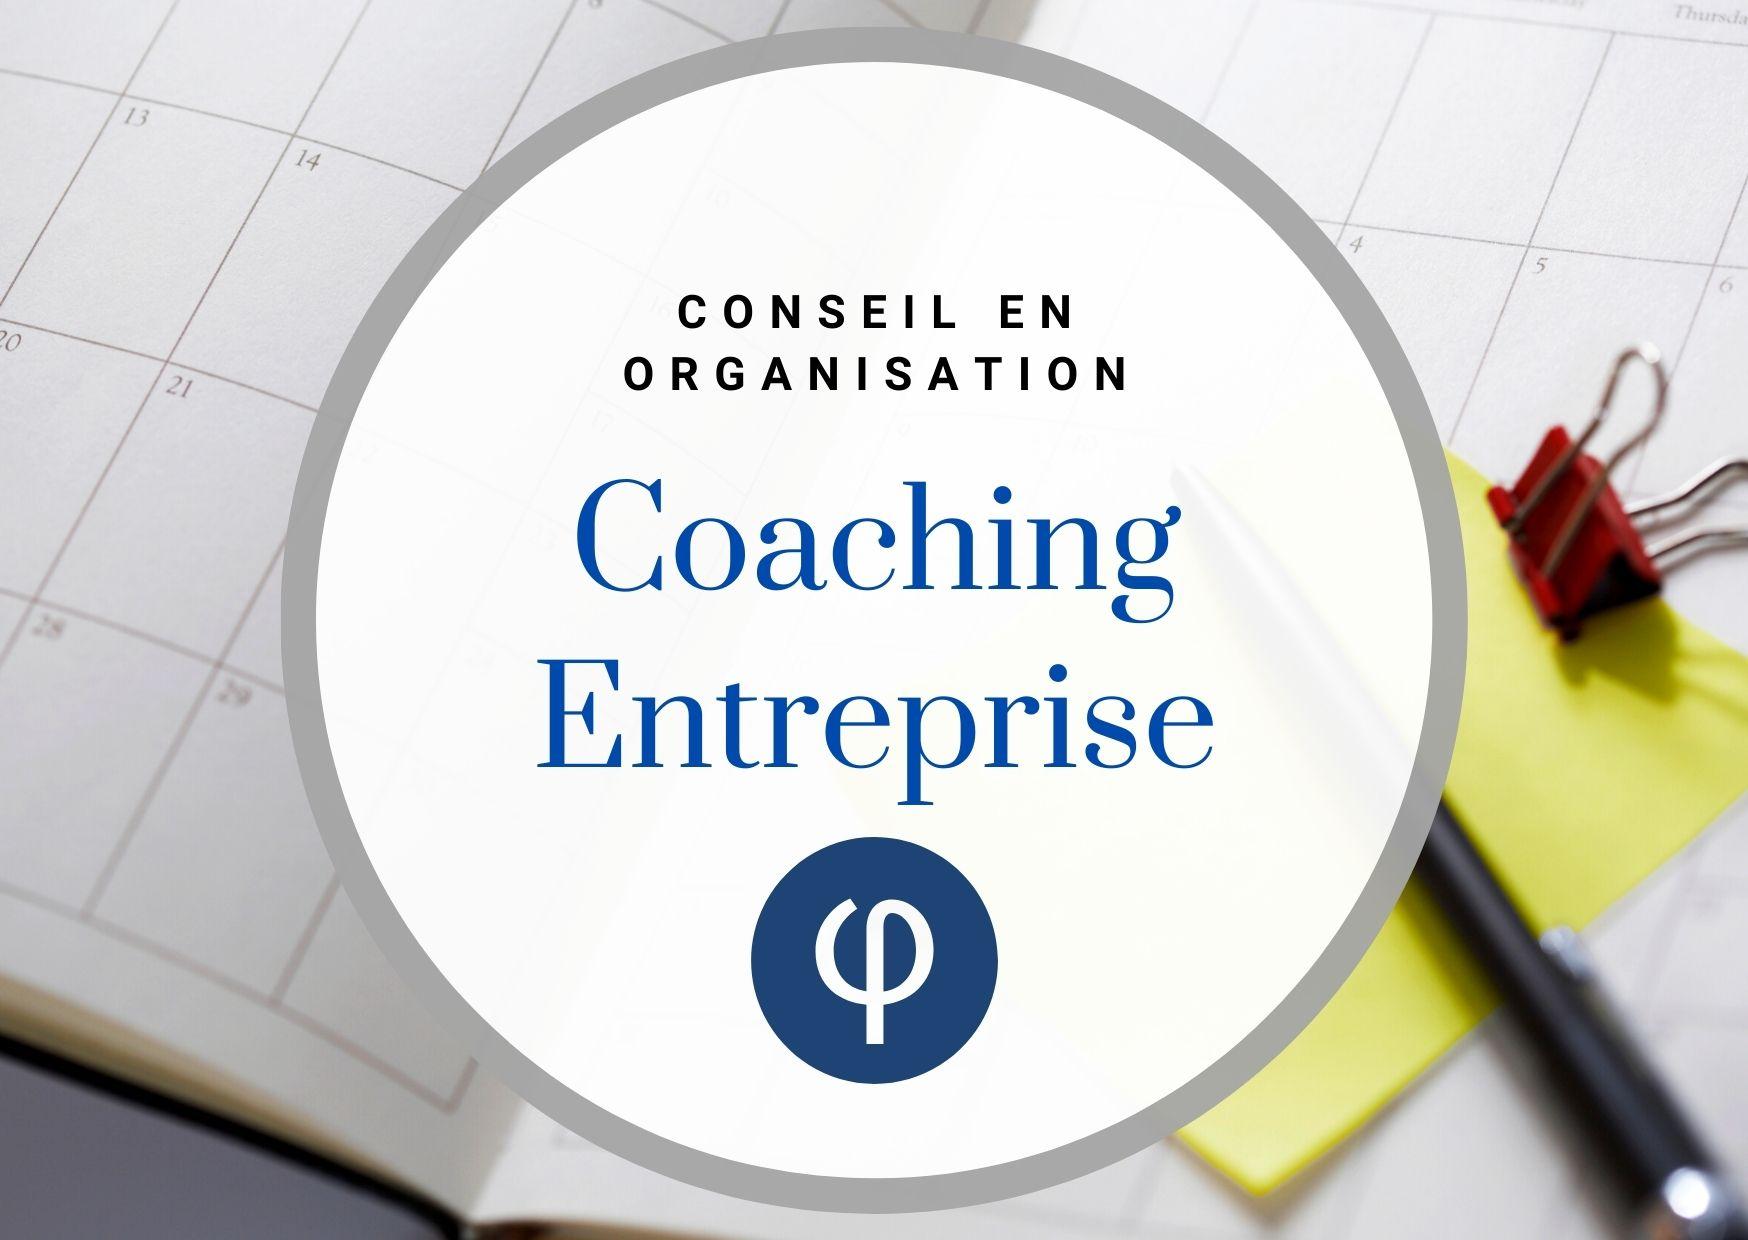 Conseil en organisation : Coaching entreprise vous simplifie votre gestion !